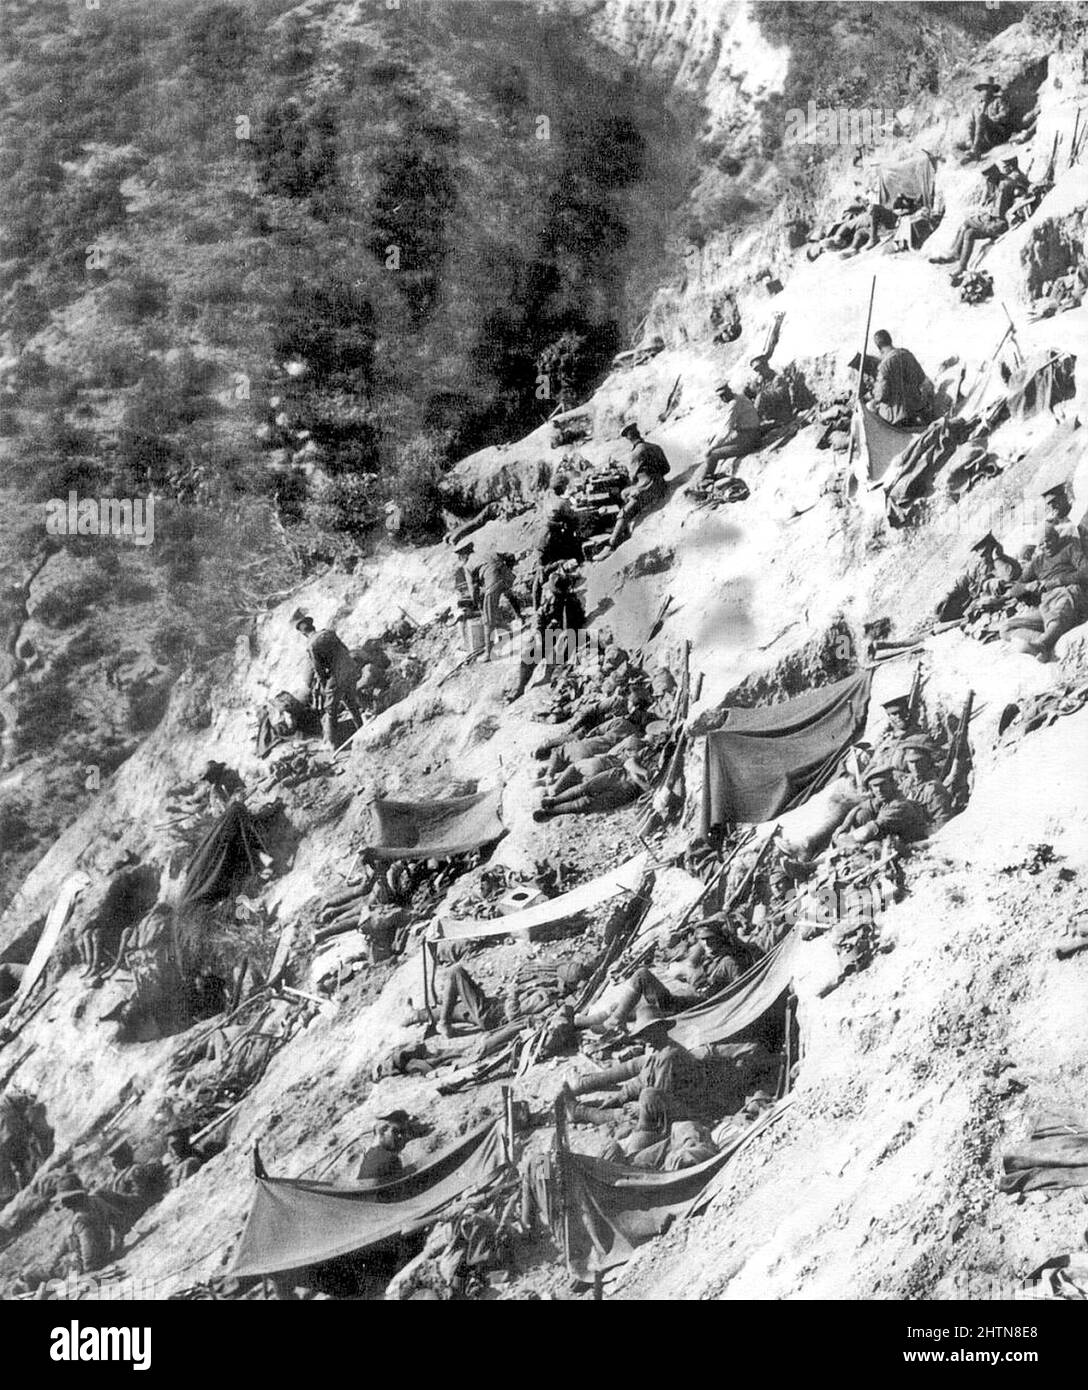 Steele's Post, une position de l'ANZAC sur les falaises au-dessus de l'anse de l'ANZAC sur la péninsule de Gallipoli pendant les atterrissages de Gallipoli pendant la première Guerre mondiale. Photo de mai 1915. Banque D'Images